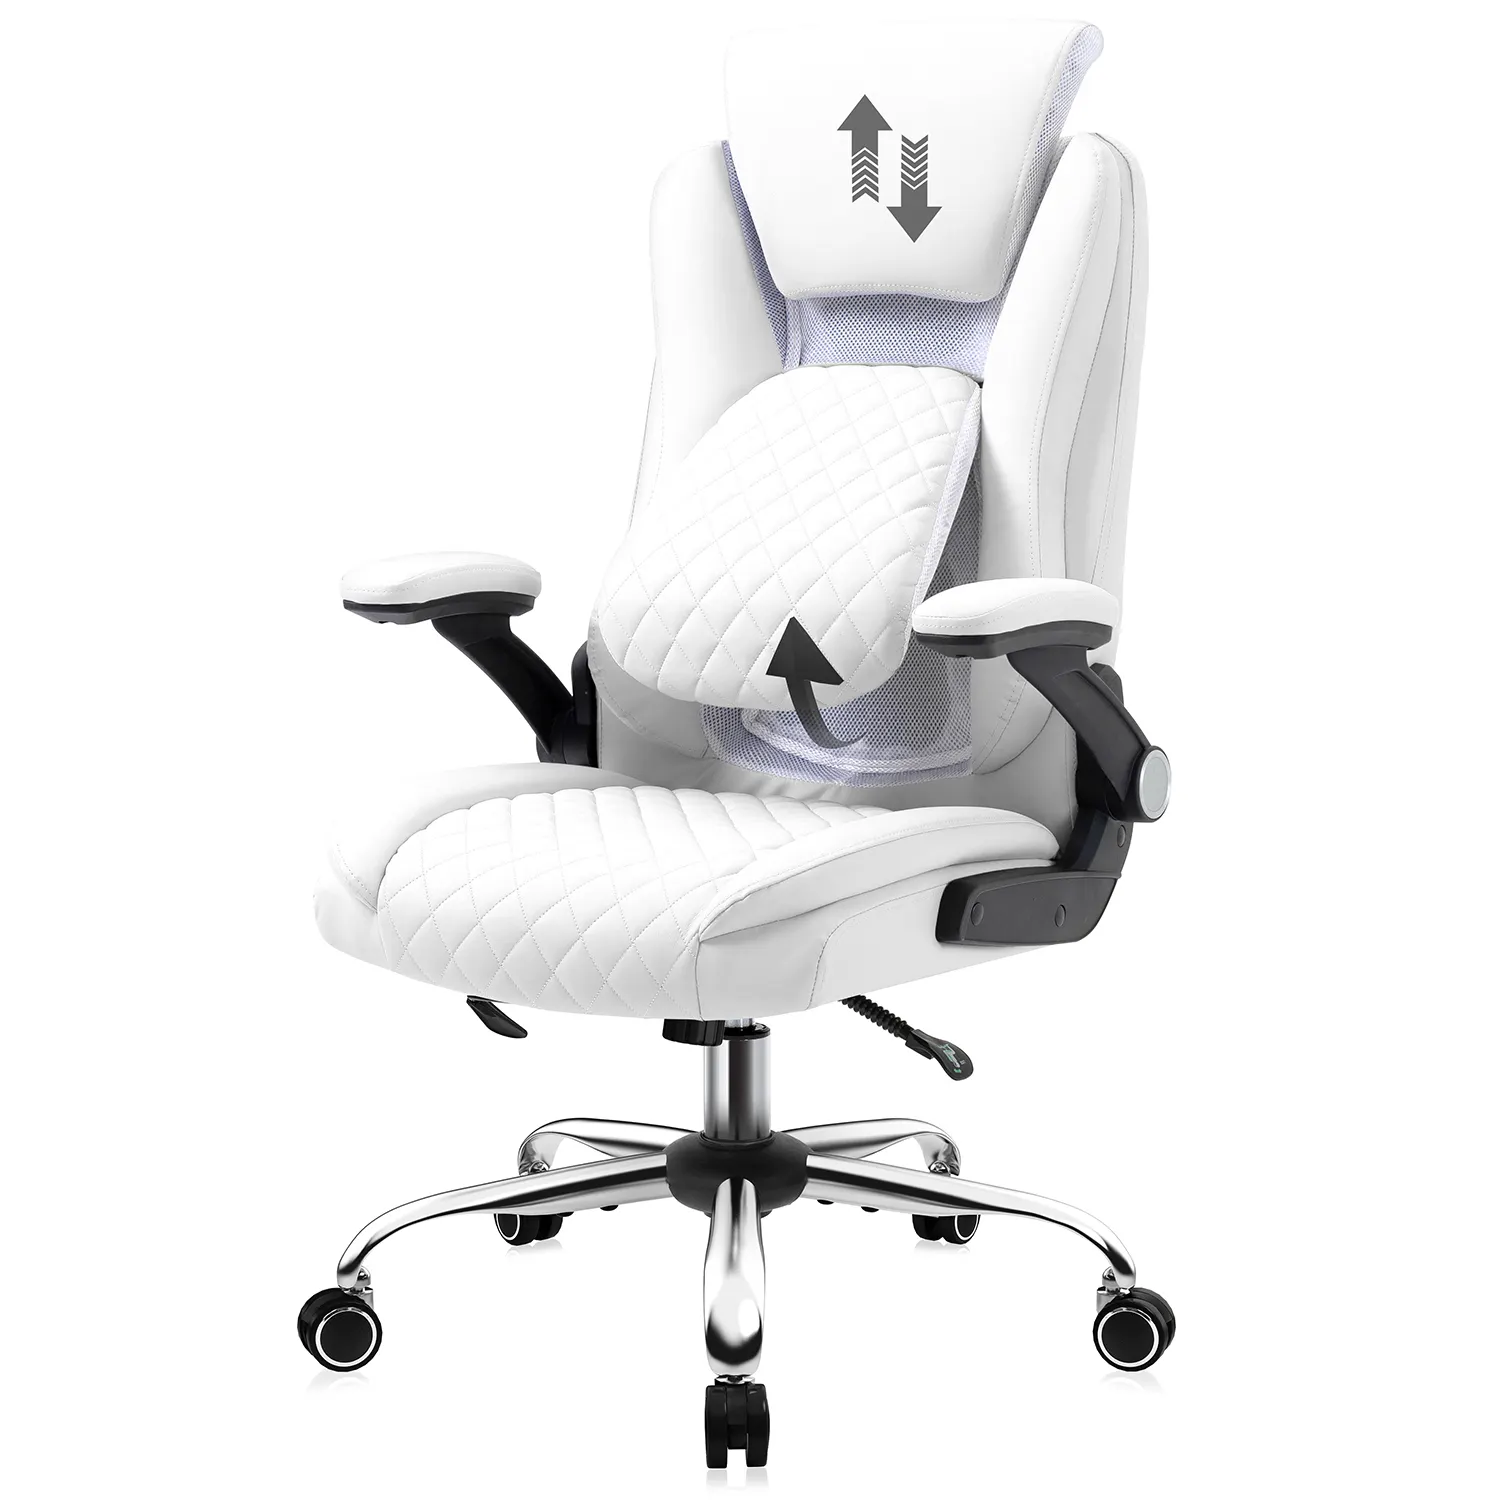 調節可能な椅子快適なエグゼクティブオフィスチェアPU高密度フォームオフィスチェアで布張りモダンな人間工学